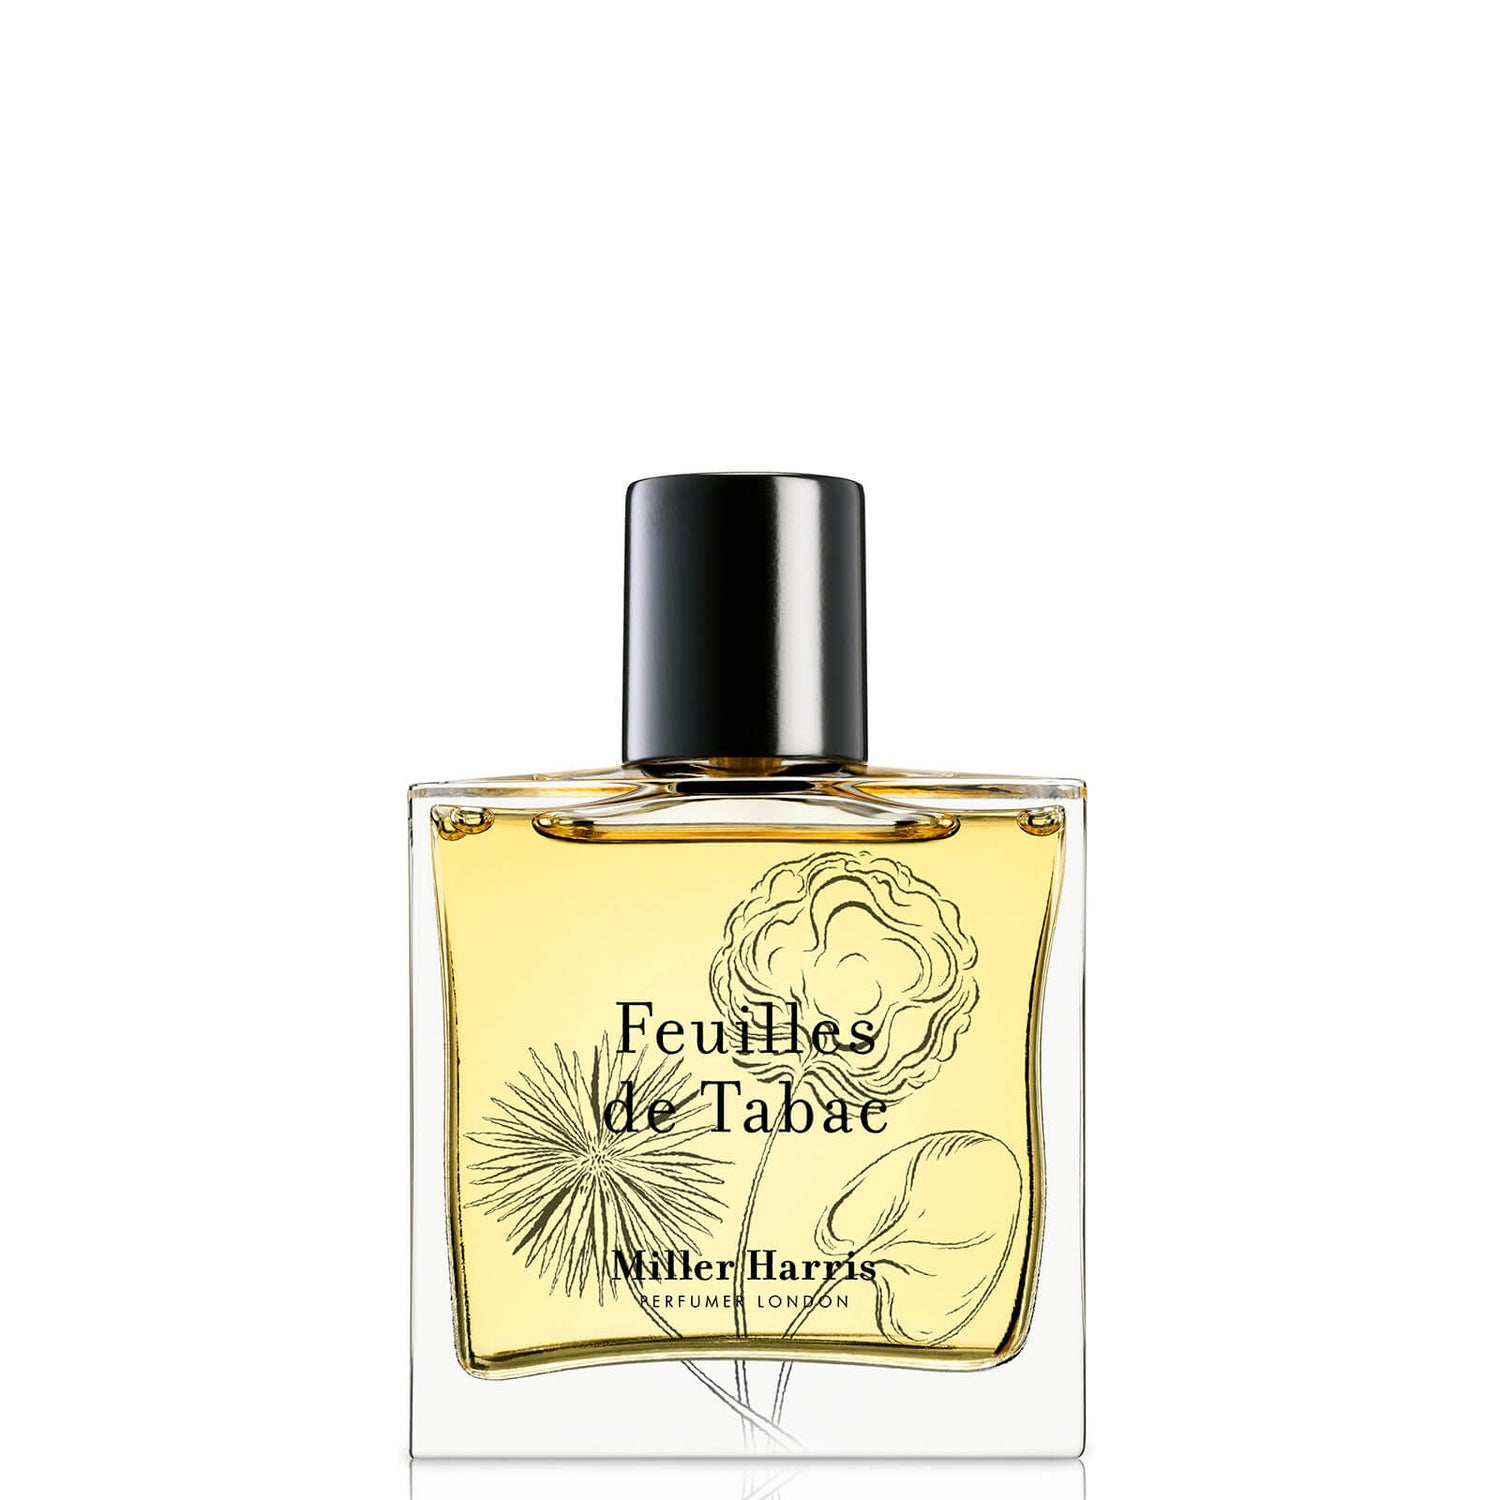 Miller Harris Feuilles de Tabac Eau de Parfum 50ml